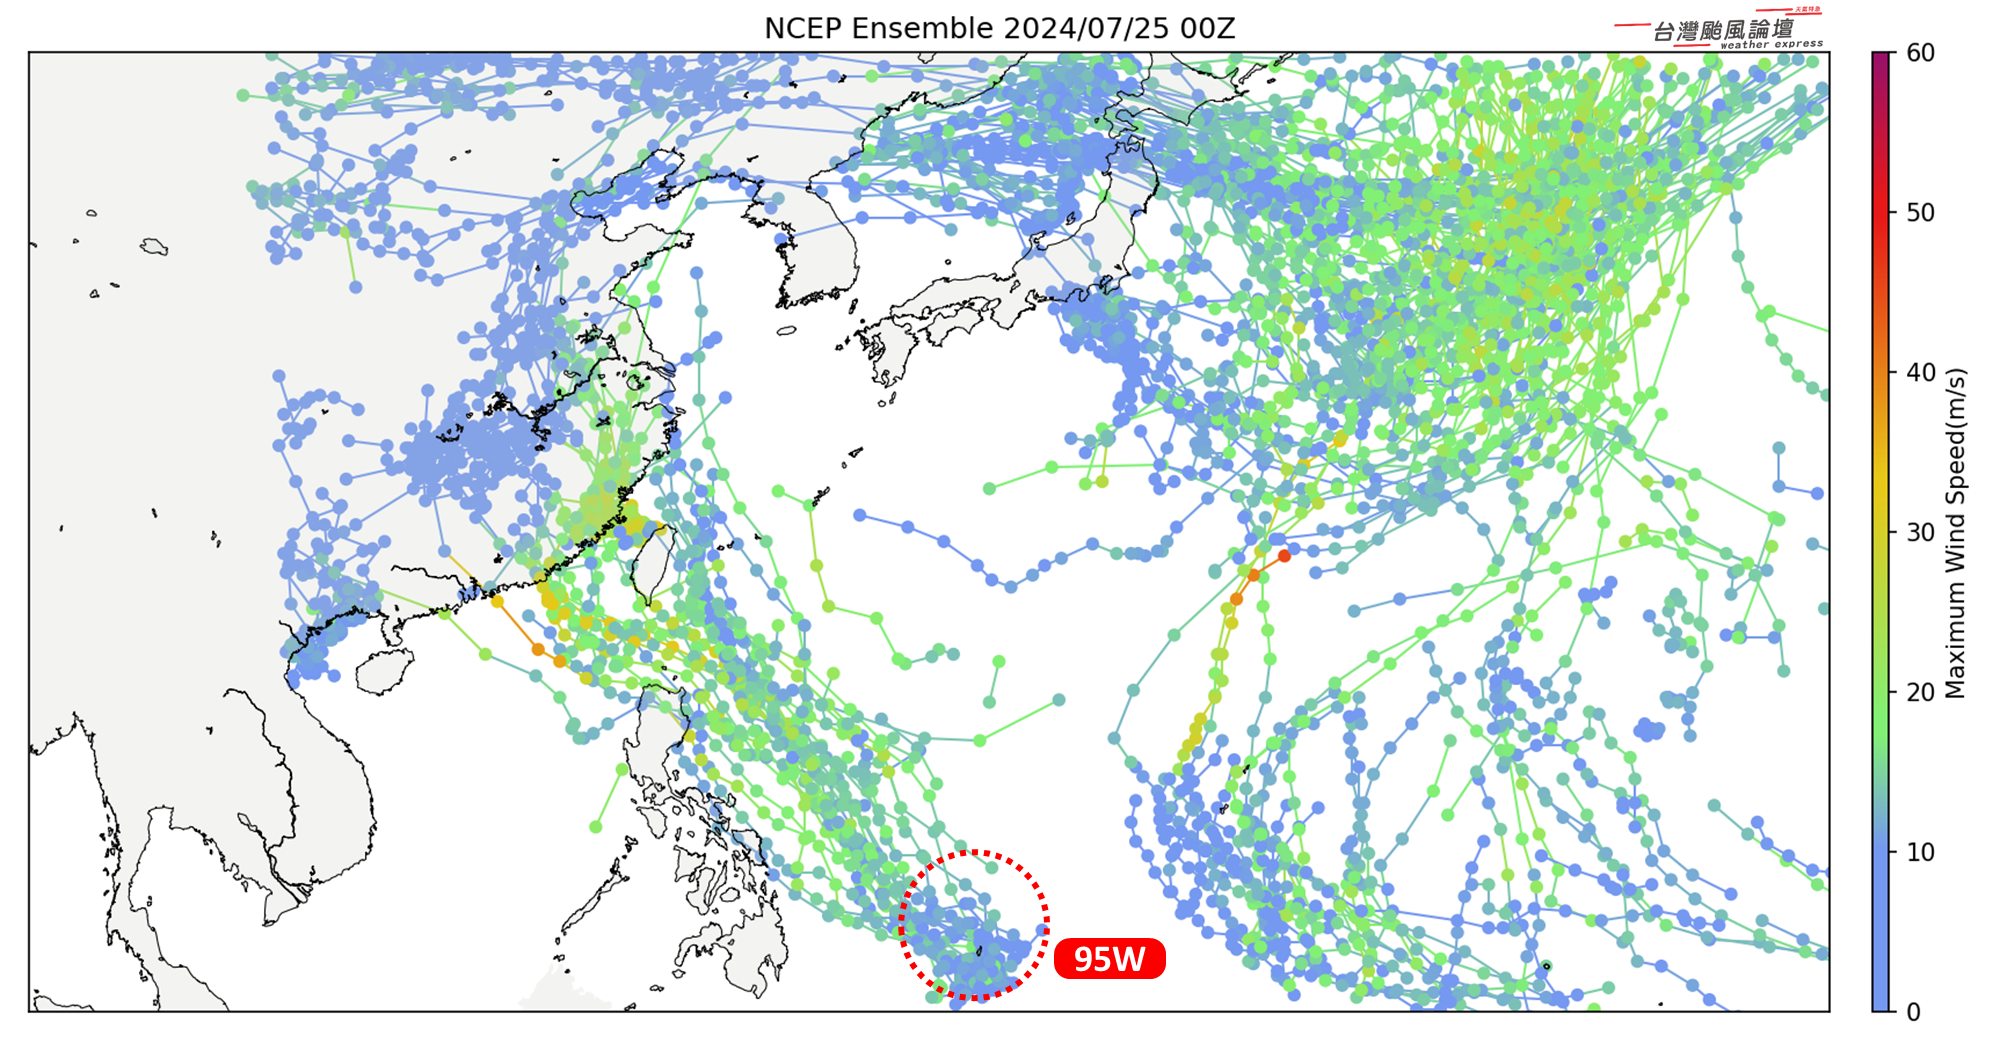 凱米颱風-凱米颱風路徑-熱帶擾動-氣象預報-最新颱風路徑